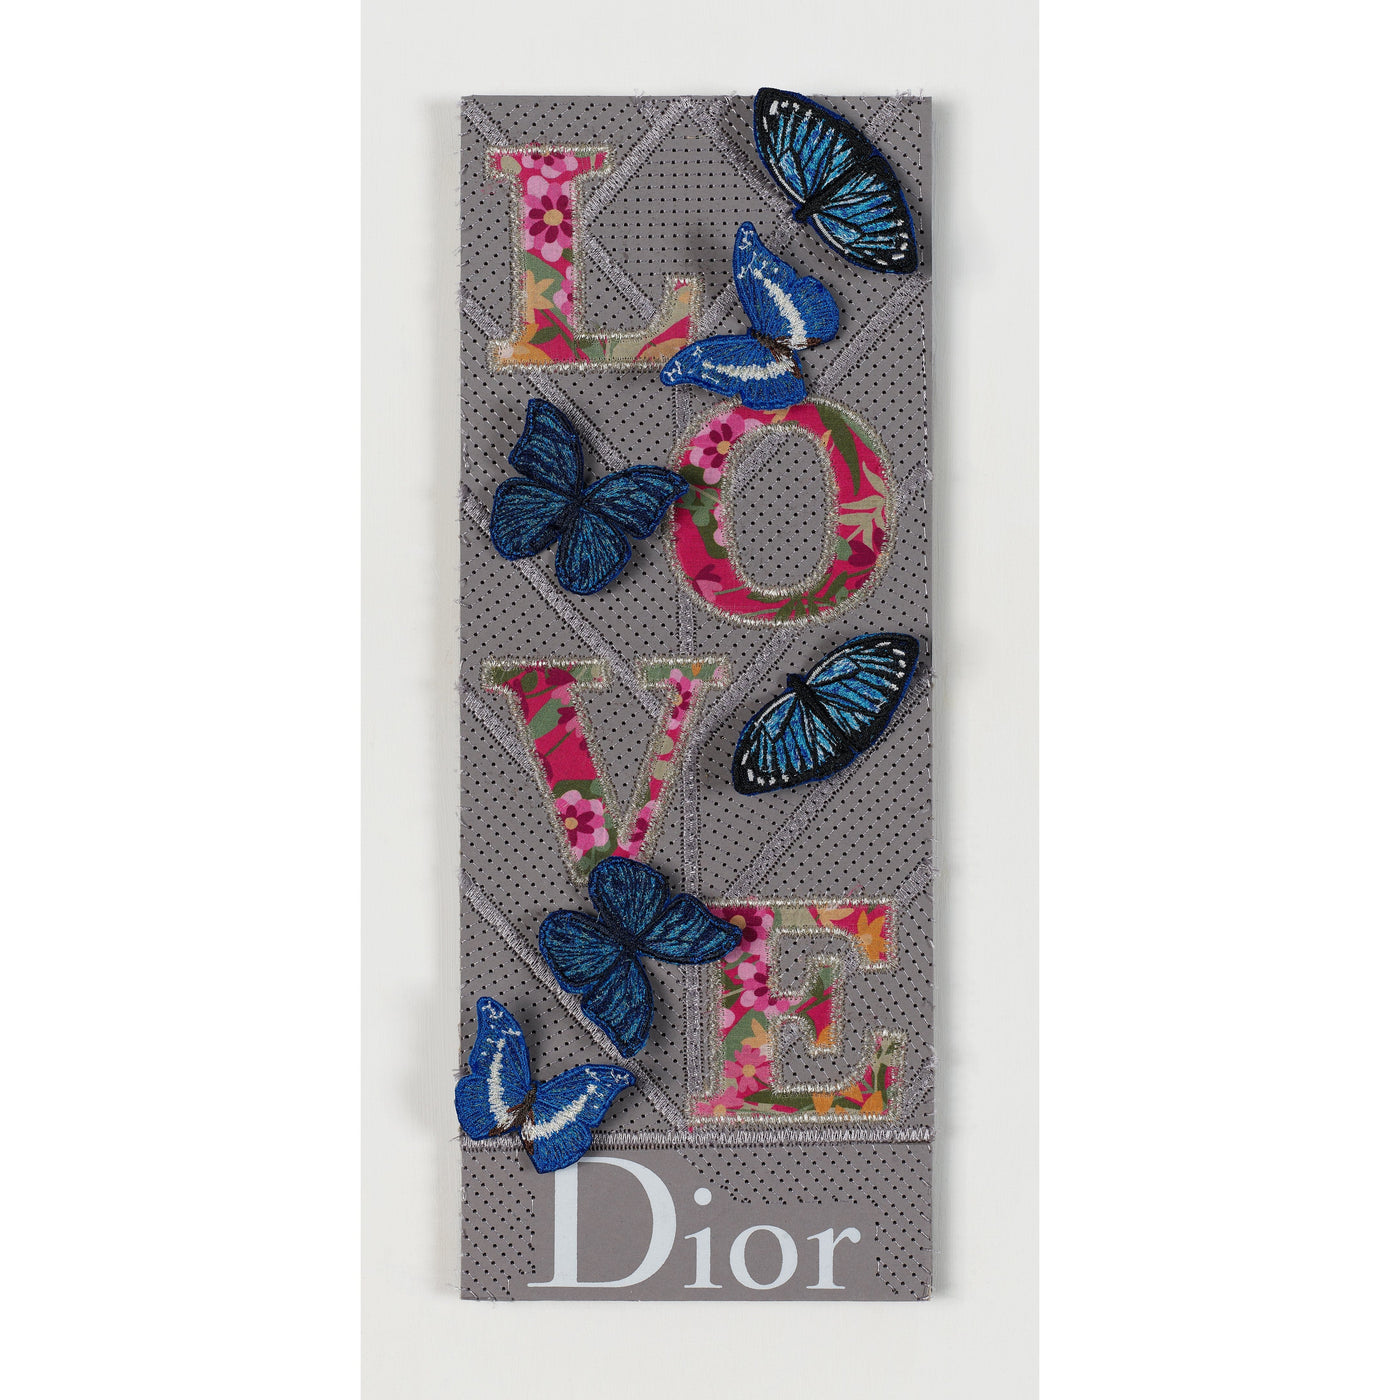 Dior Love Artwork Stephen WIlson 